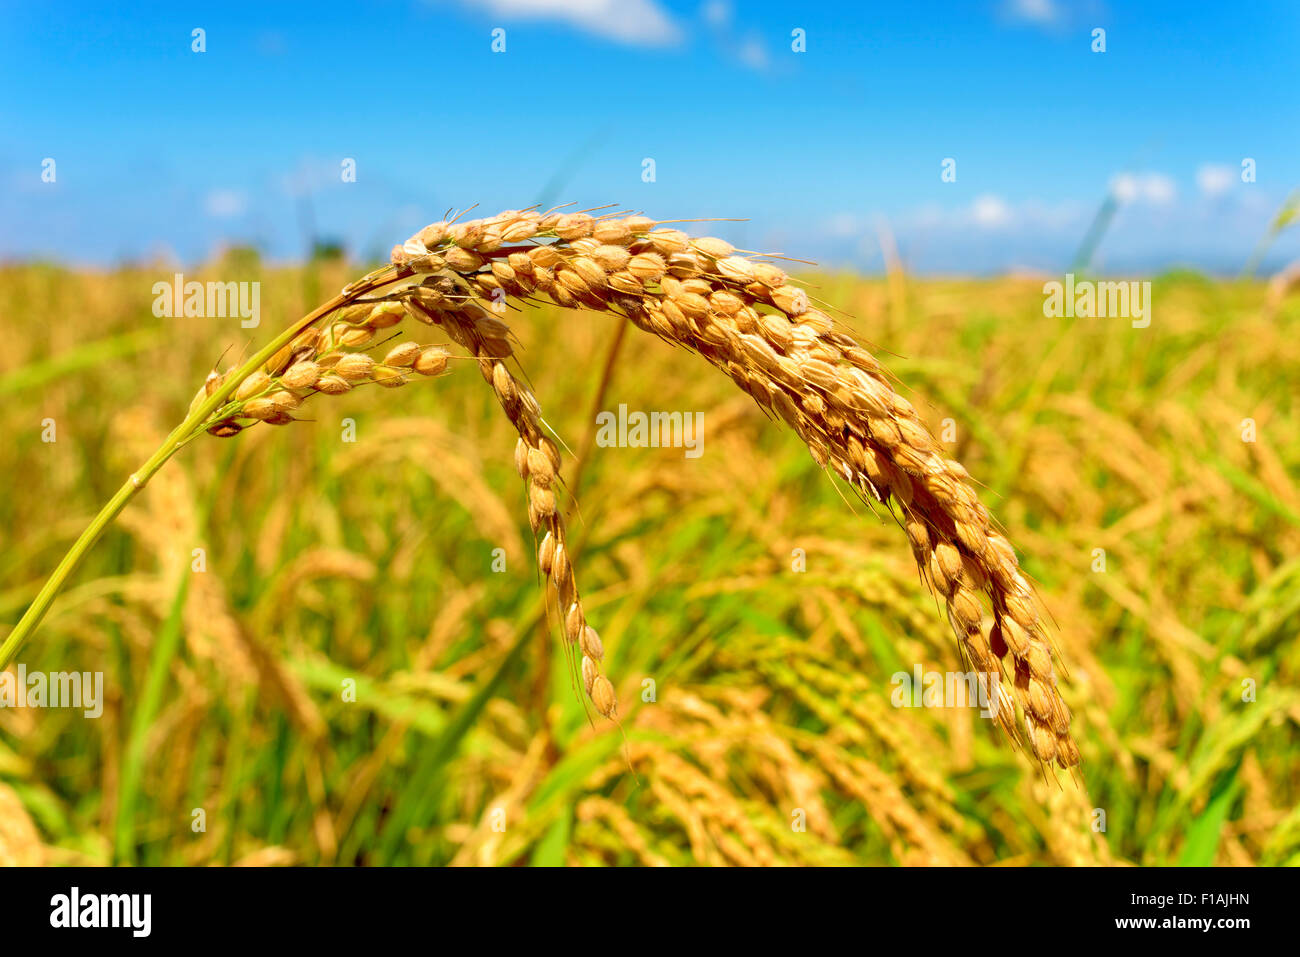 Pianta di riso immagini e fotografie stock ad alta risoluzione - Alamy